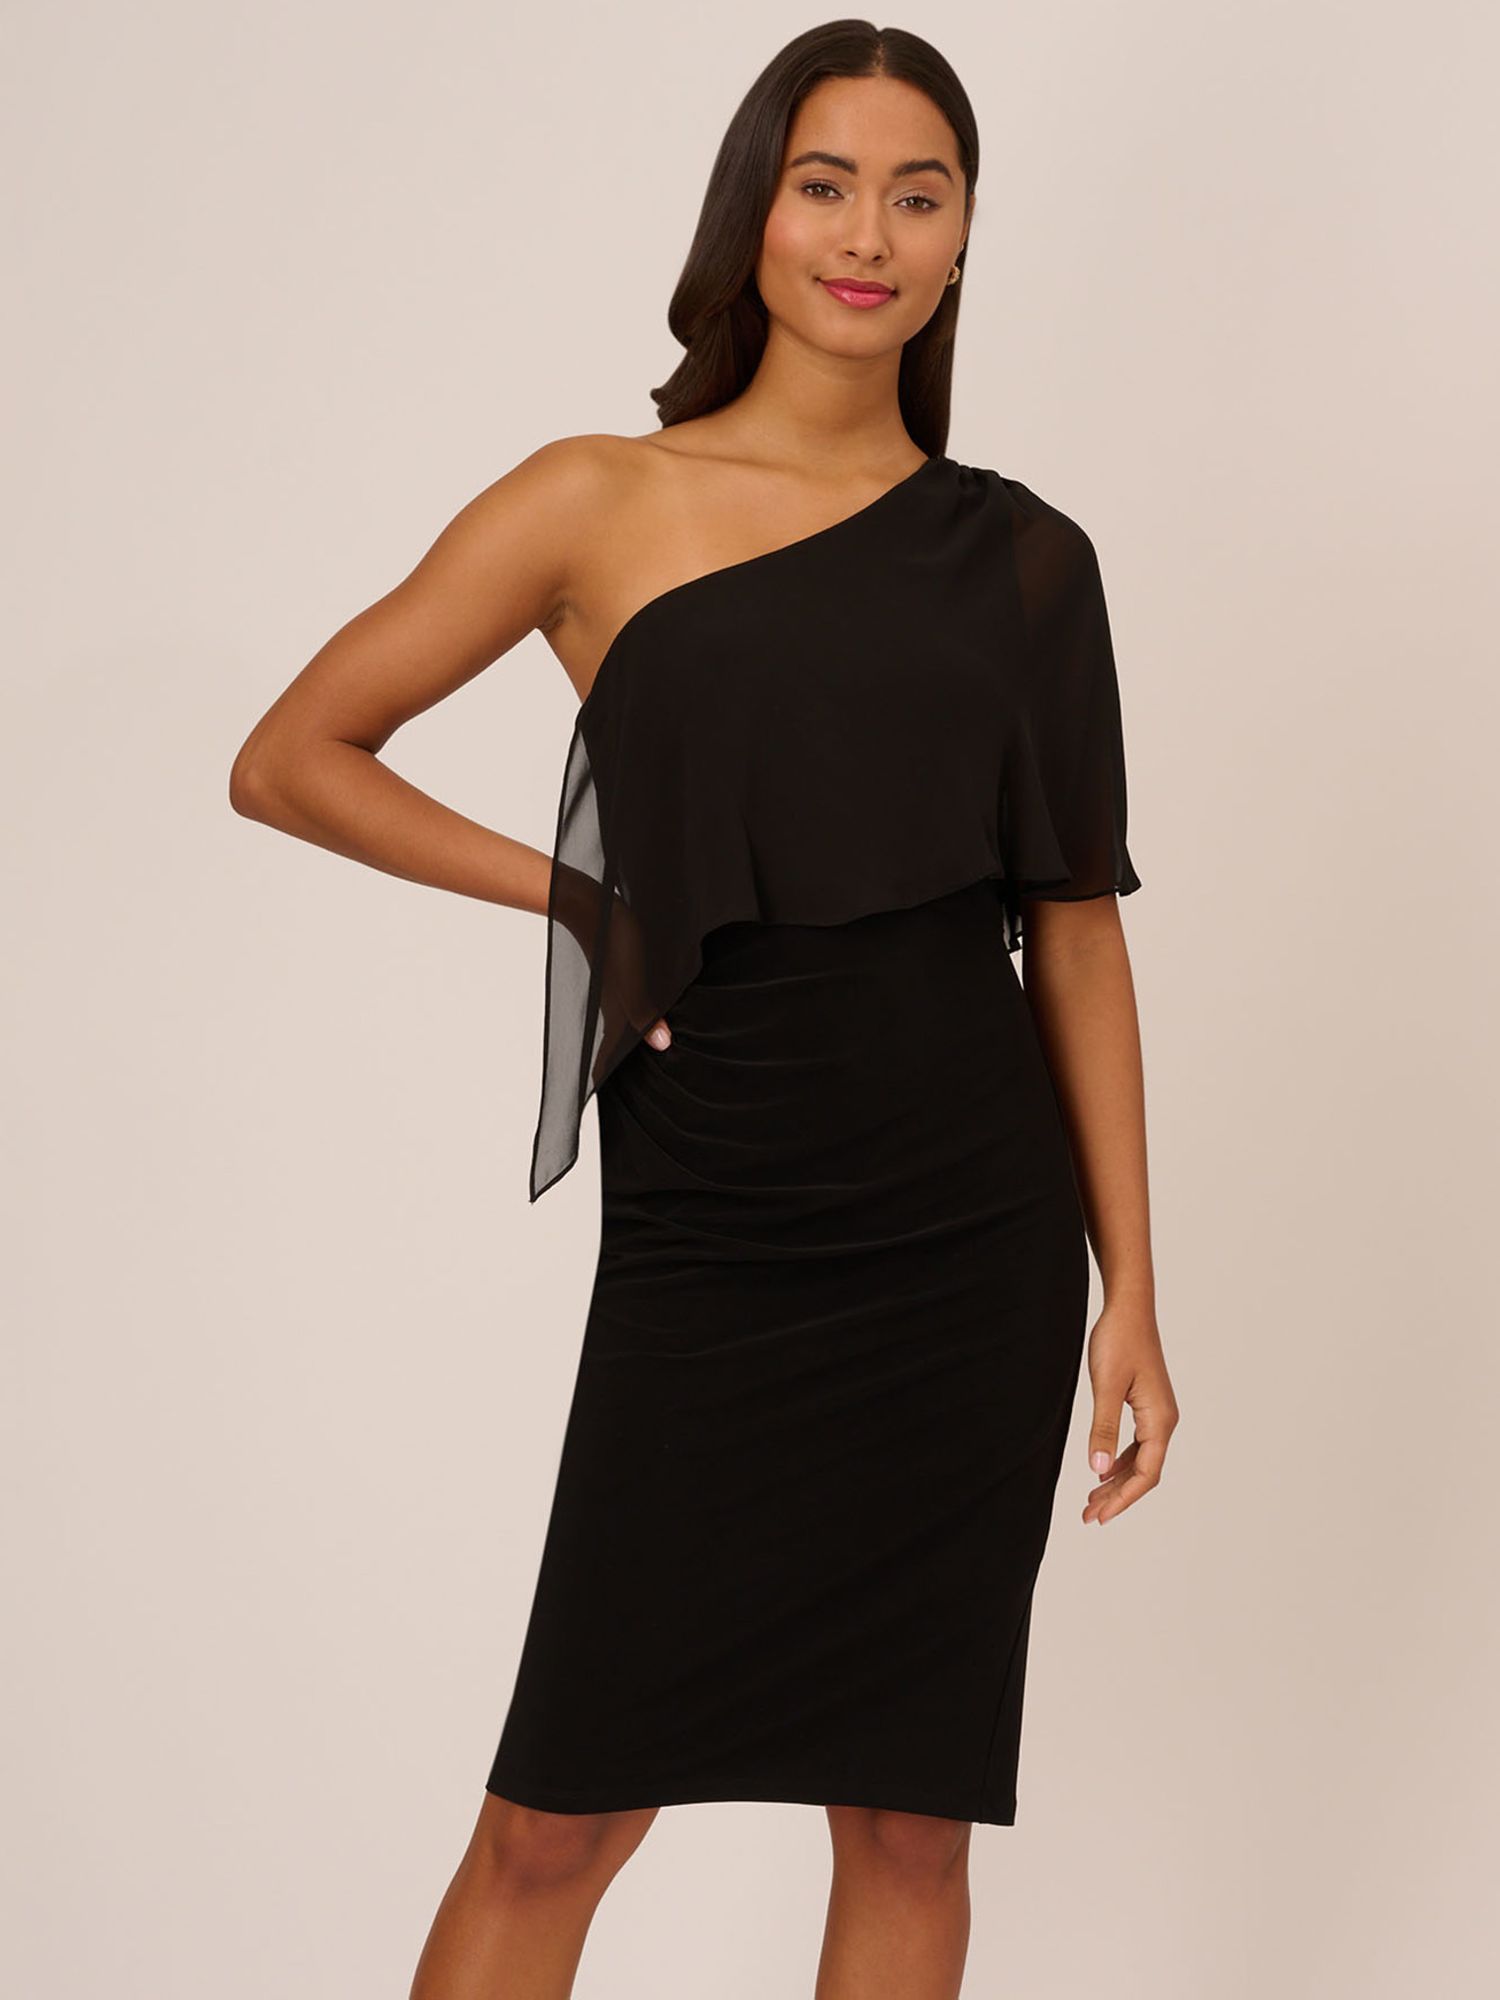 Adrianna Papell Jersey Chiffon Dress, Black